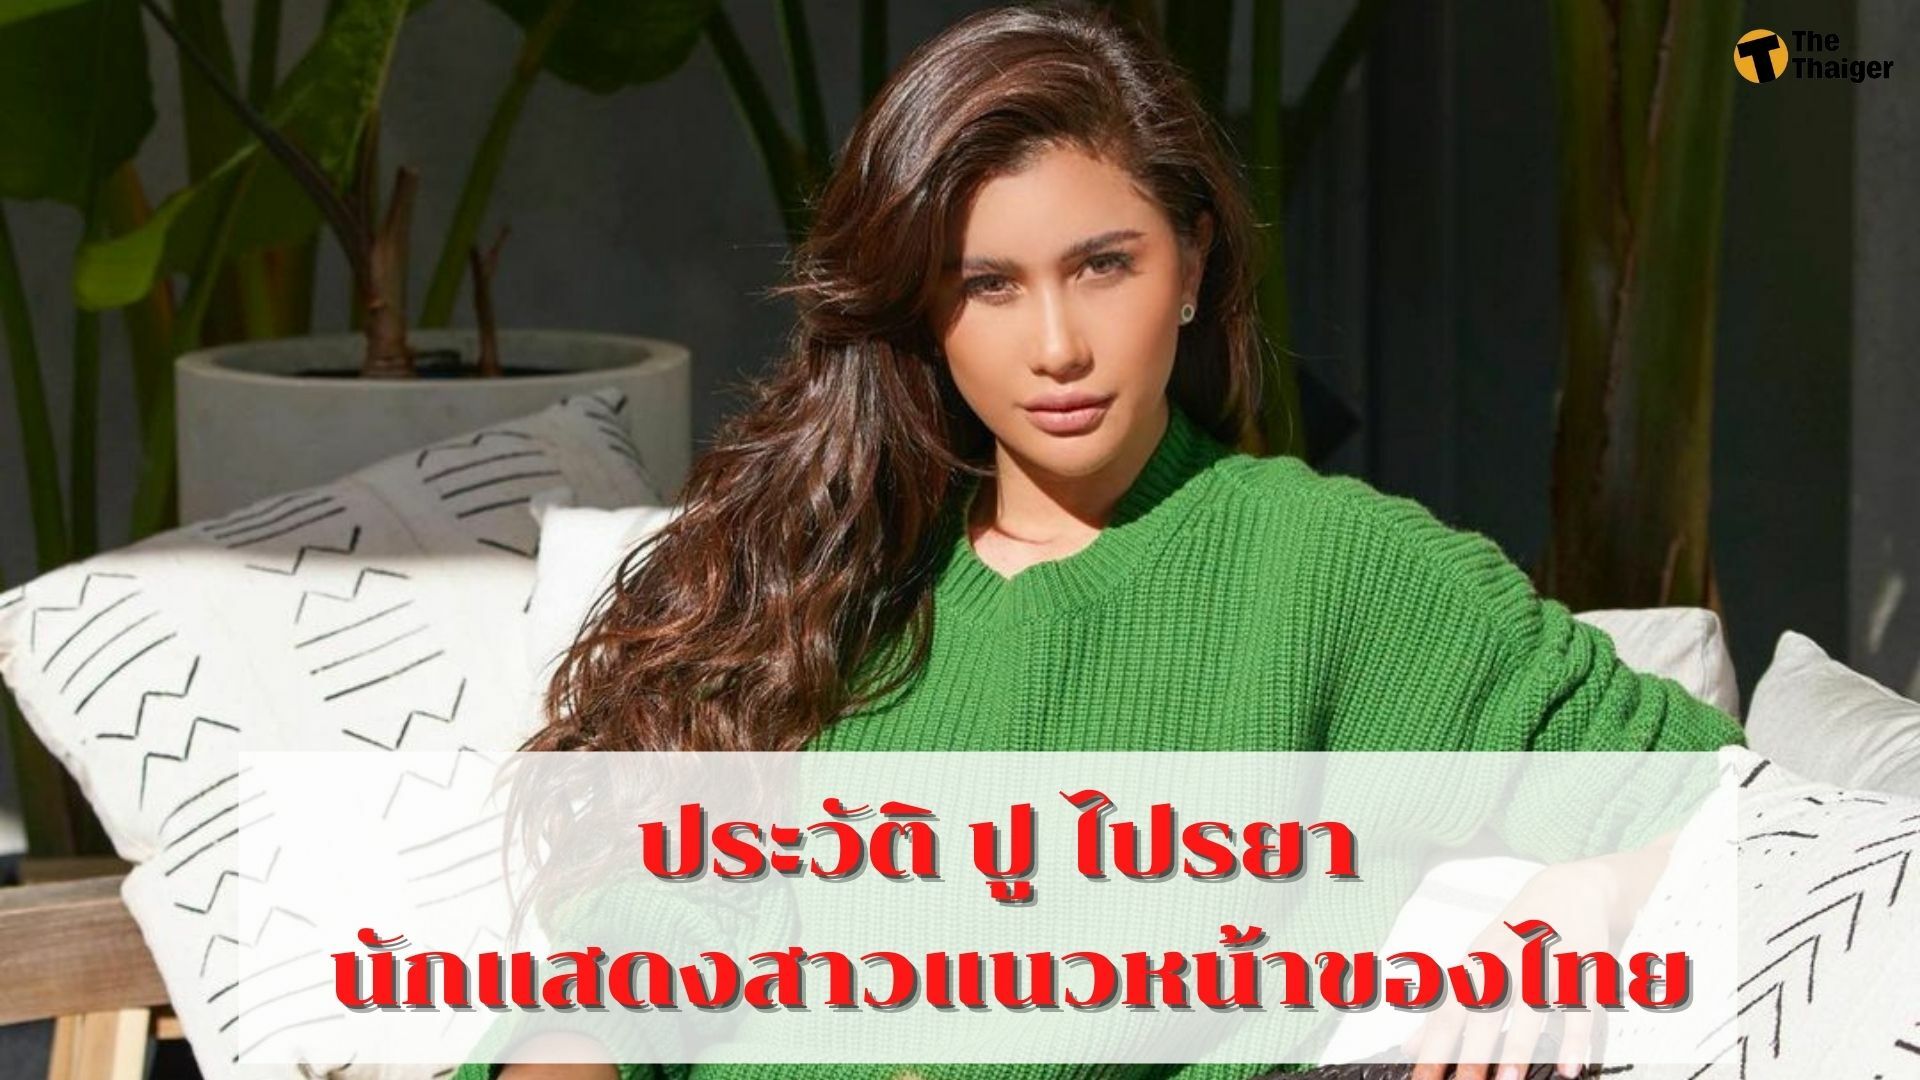 ประวัติ ปู ไปรยา นักแสดงสาวแนวหน้าของไทย กับความสามารถที่ไม่ธรรมดา